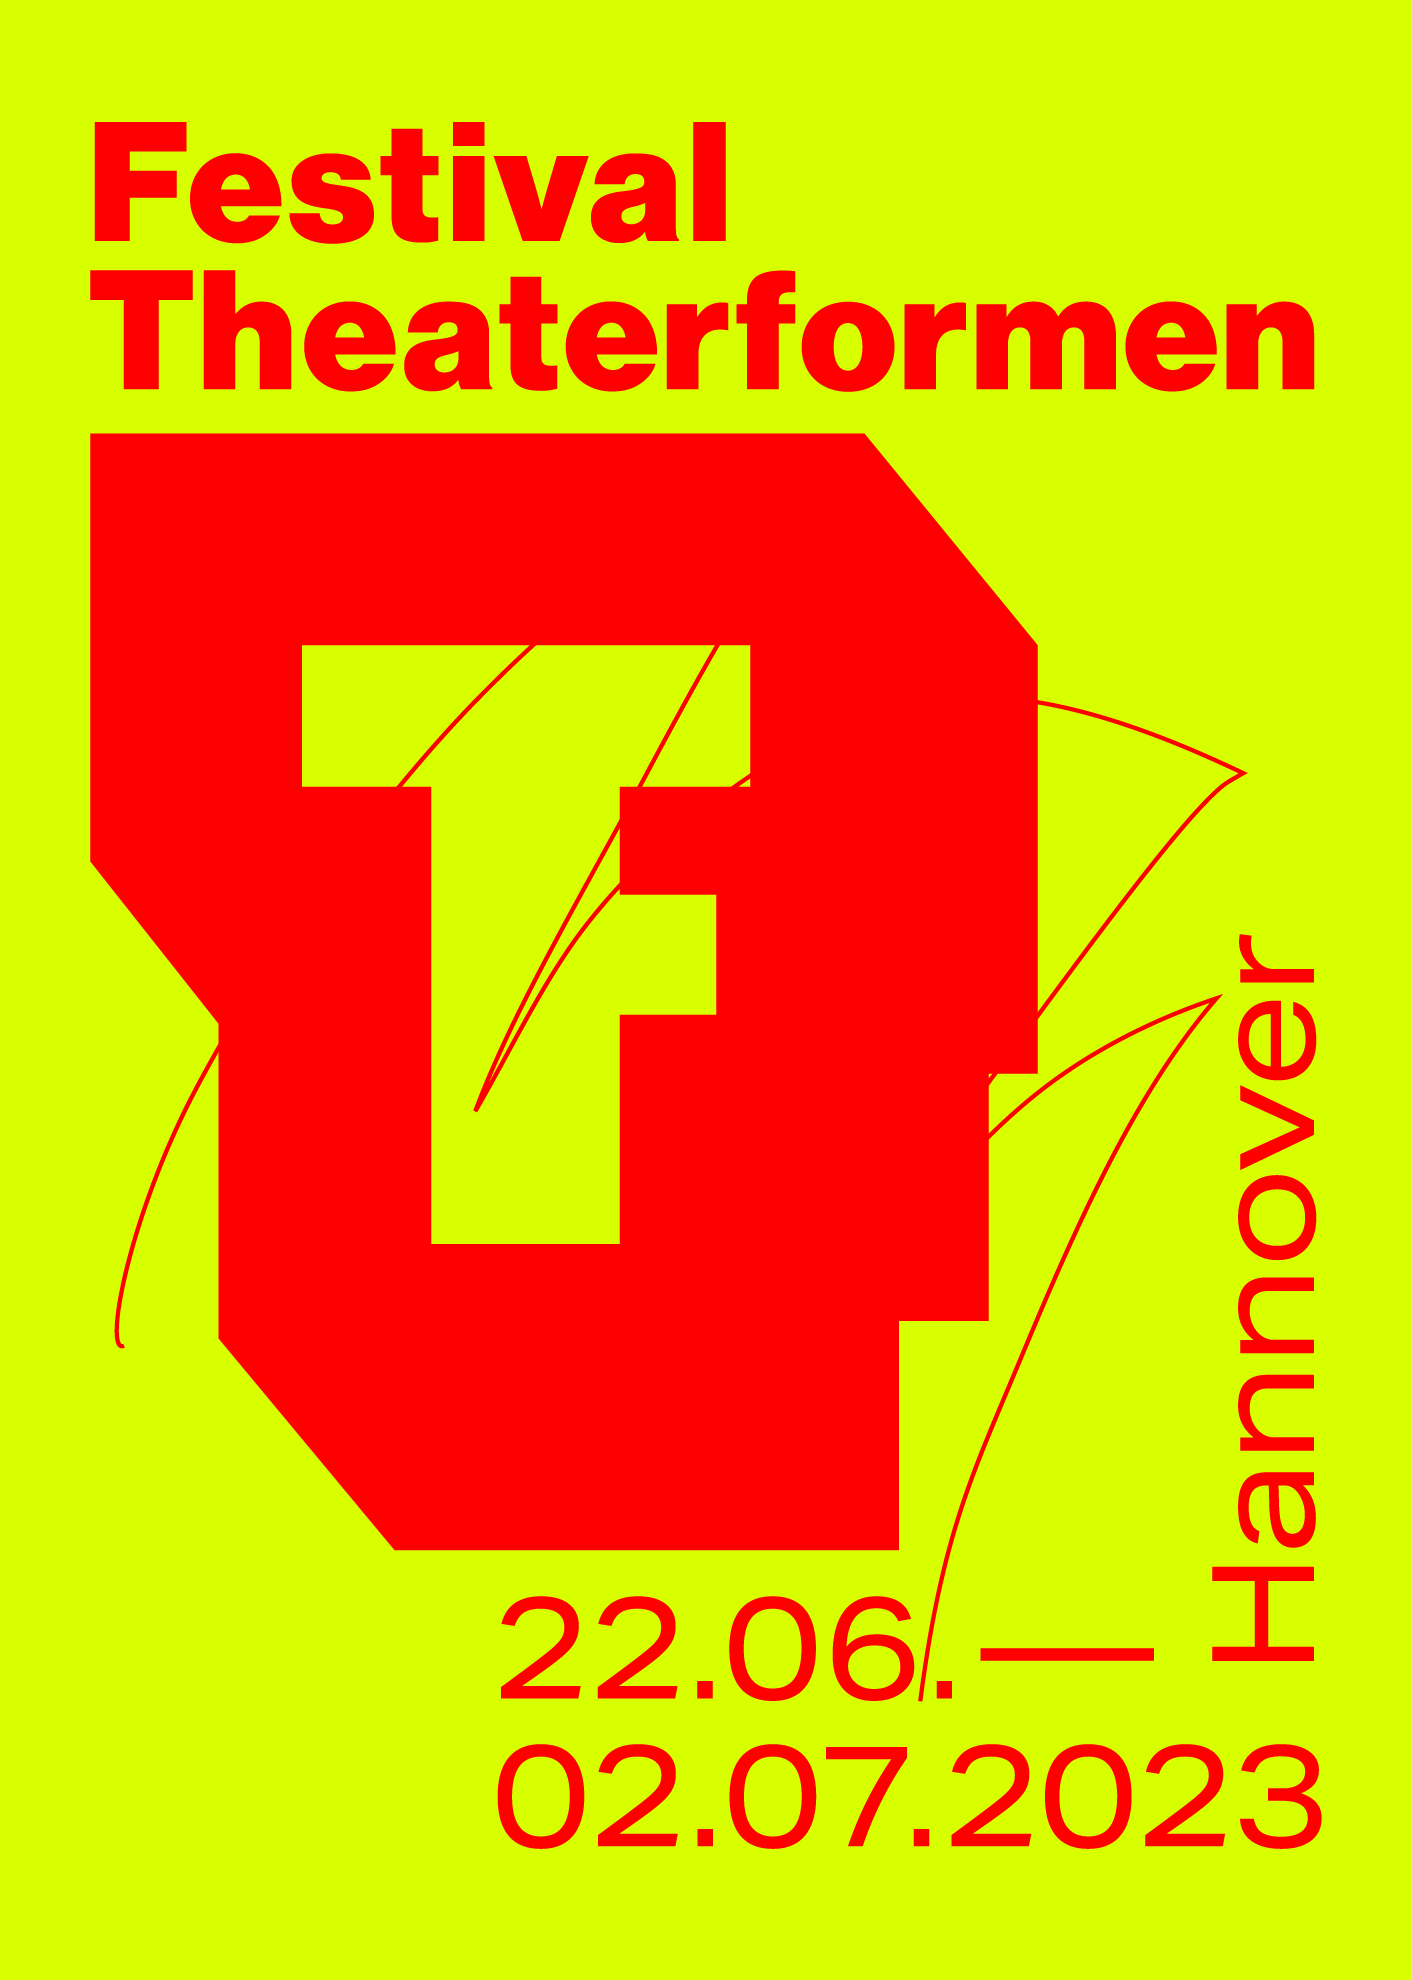 Das Bild zeigt eine neongelbe Farbfläche, auf der das Logo Theaterformen sowie der Schriftzug Festival Theaterformen in Rot liegt. Darunter sind die Festivaldaten 22.06. bis 02.07. und der Ort Hannover in Rot angegeben. Das Logo durchzieht ein roter Scratch.